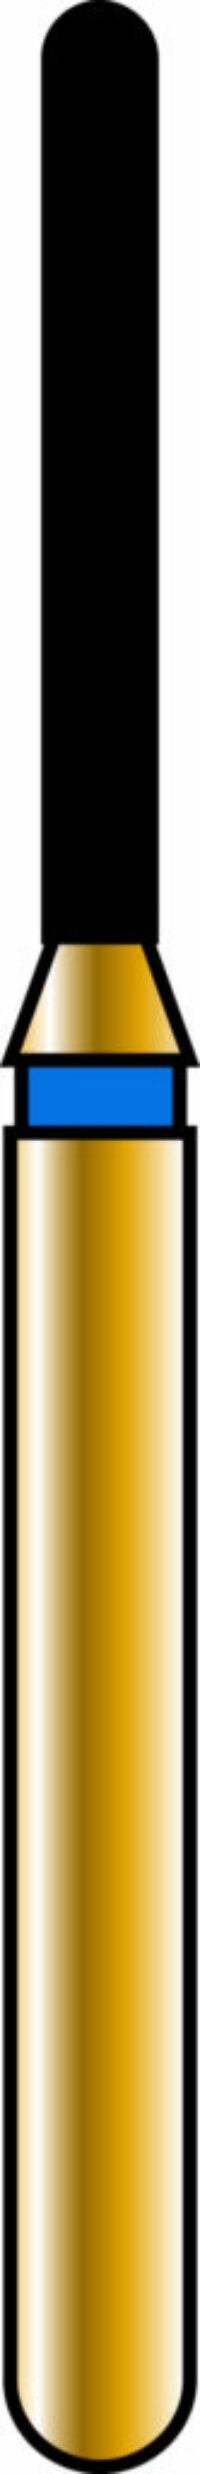 Round End Cylinder 10-8mm Gold Diamond Bur